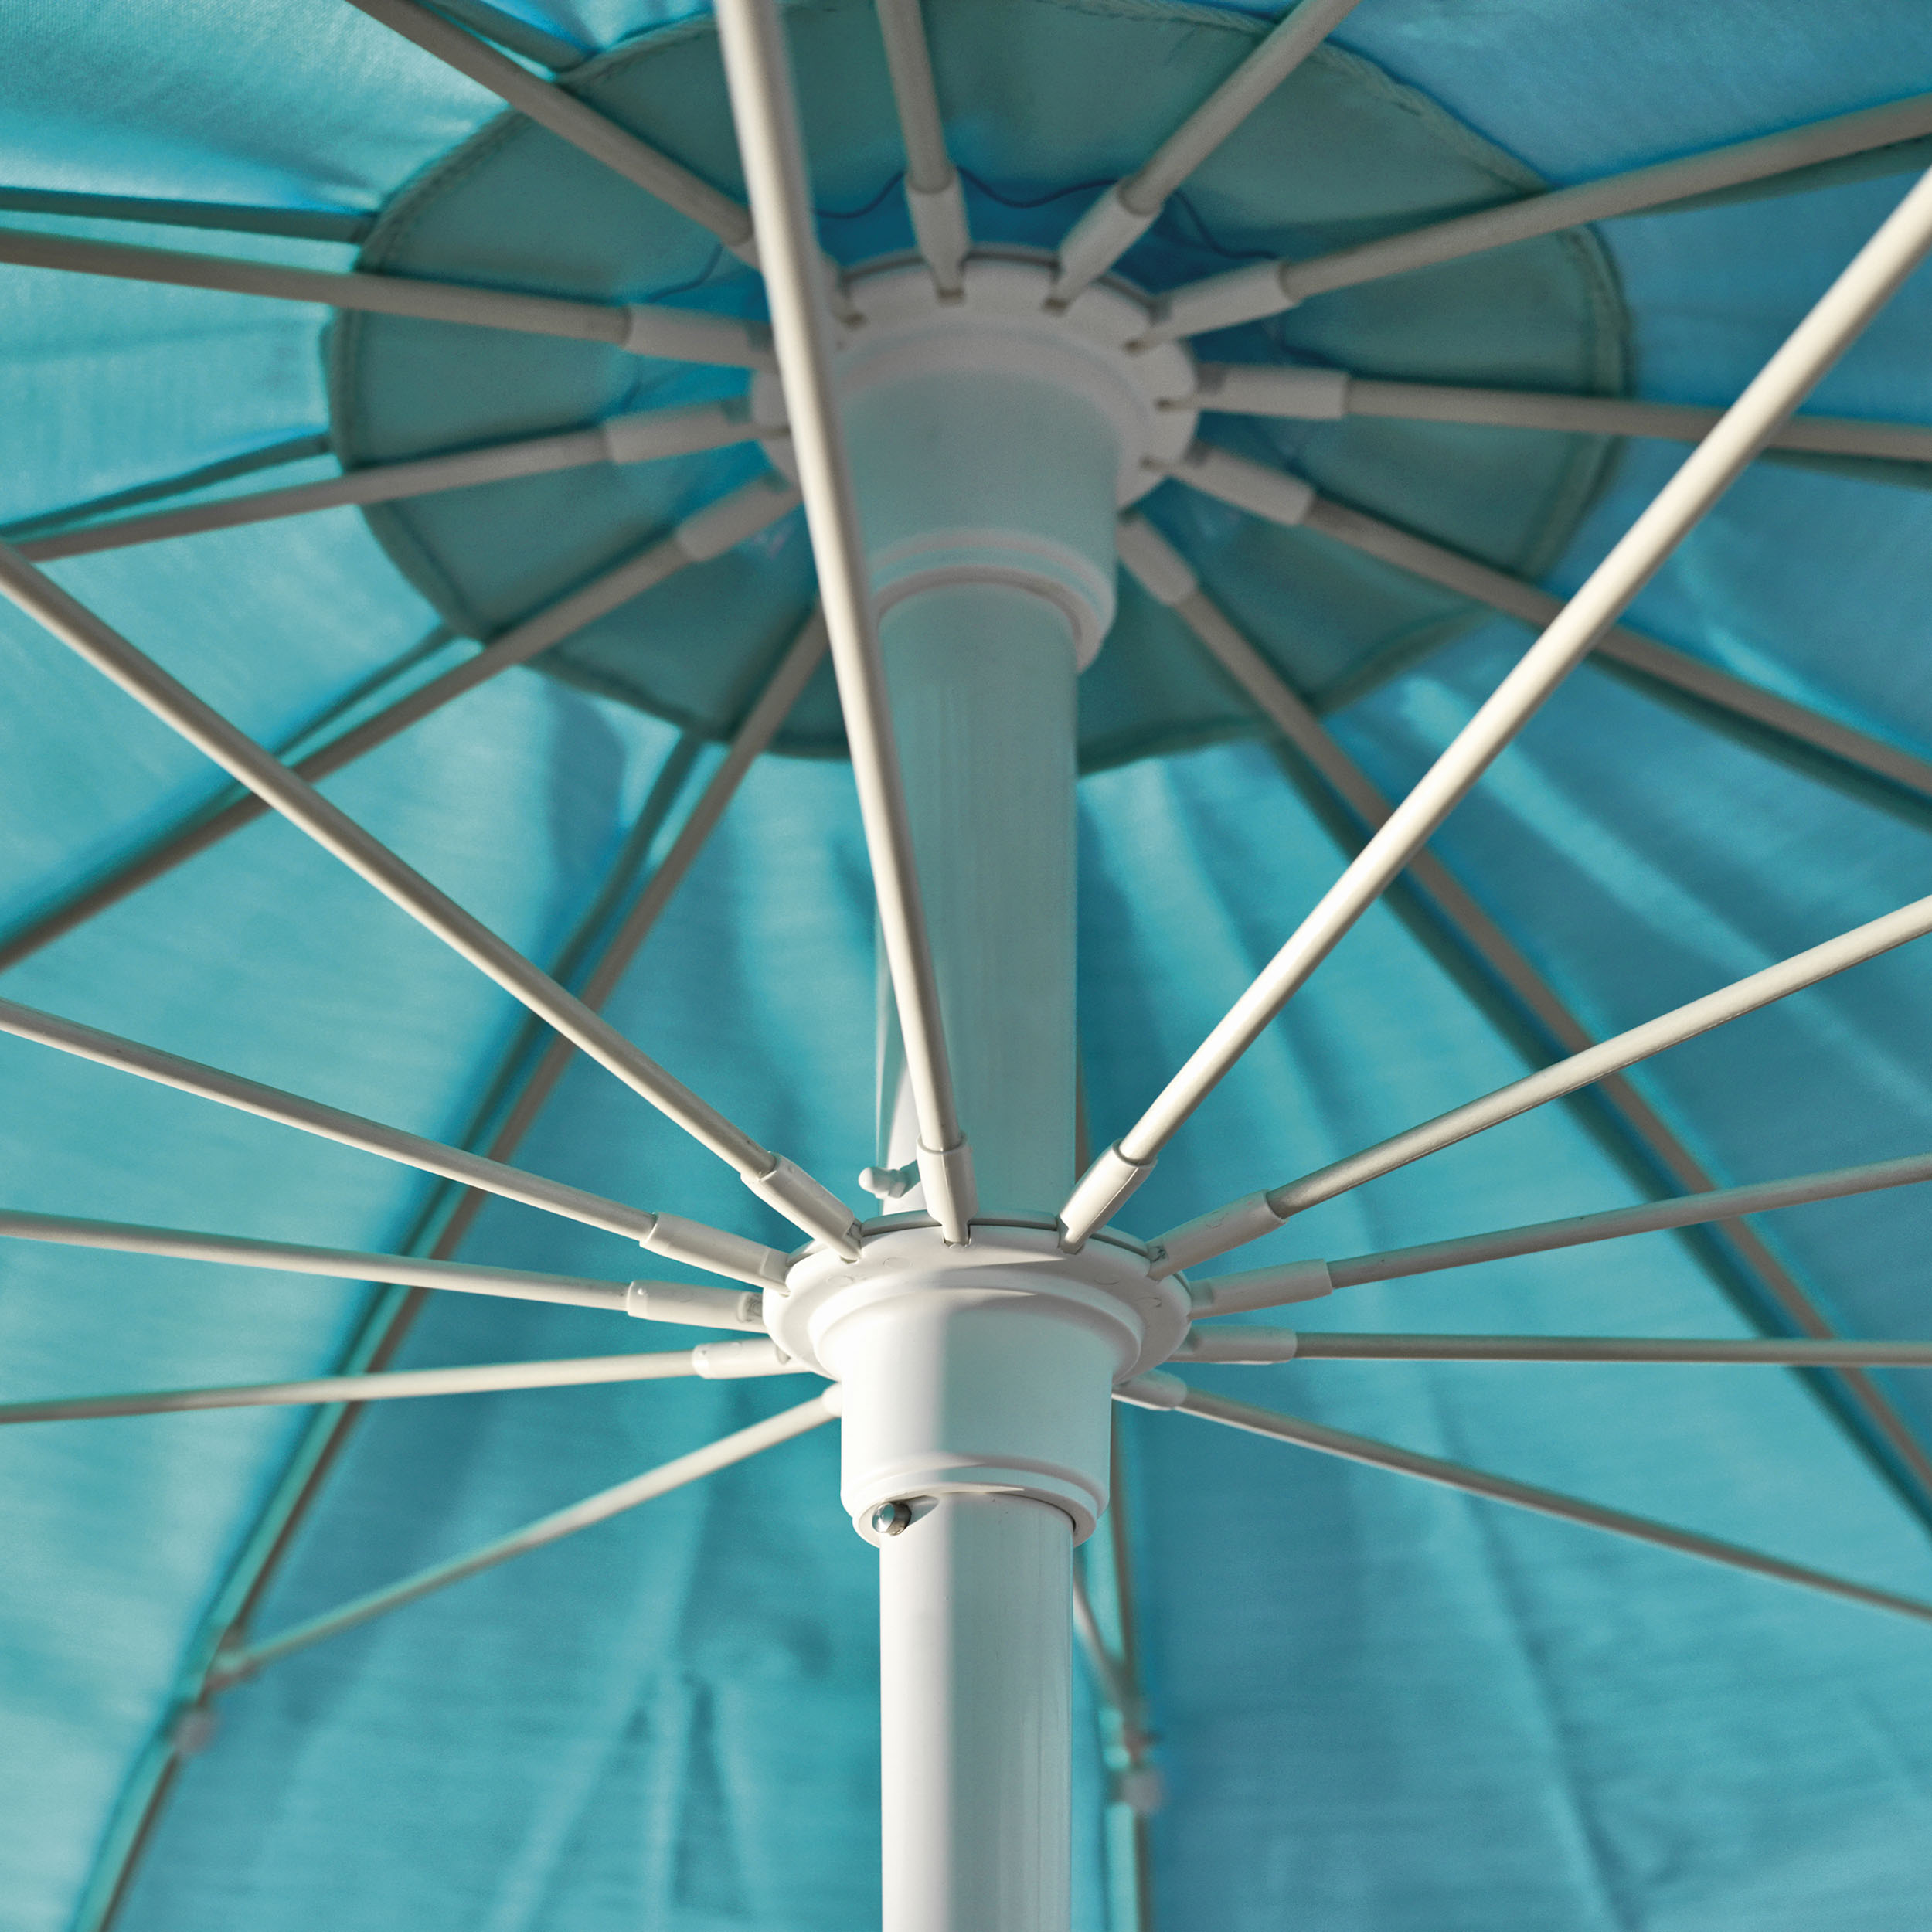 Pagodenschirm Sonnenschirm mit Seilzug ohne Schirmständer